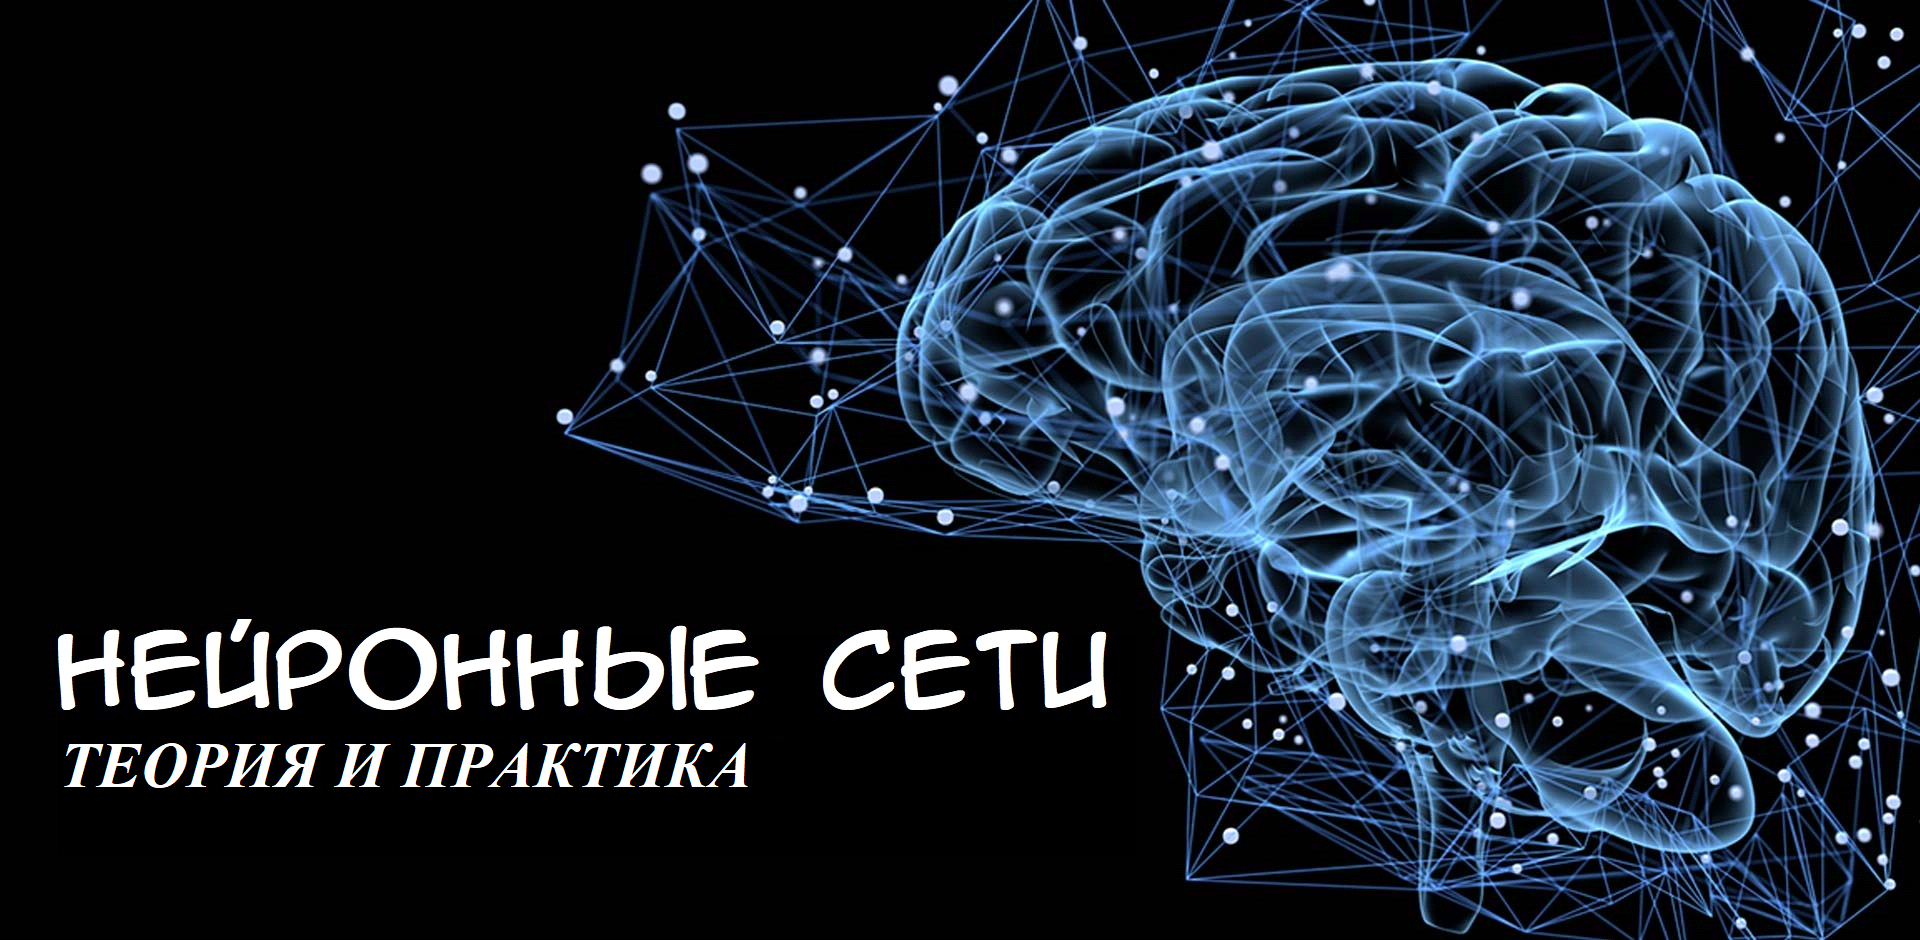 Ала сети. Нейронная сеть. Нейронные связи. Нейронная сеть мозга. Нейронные сети эмблема.